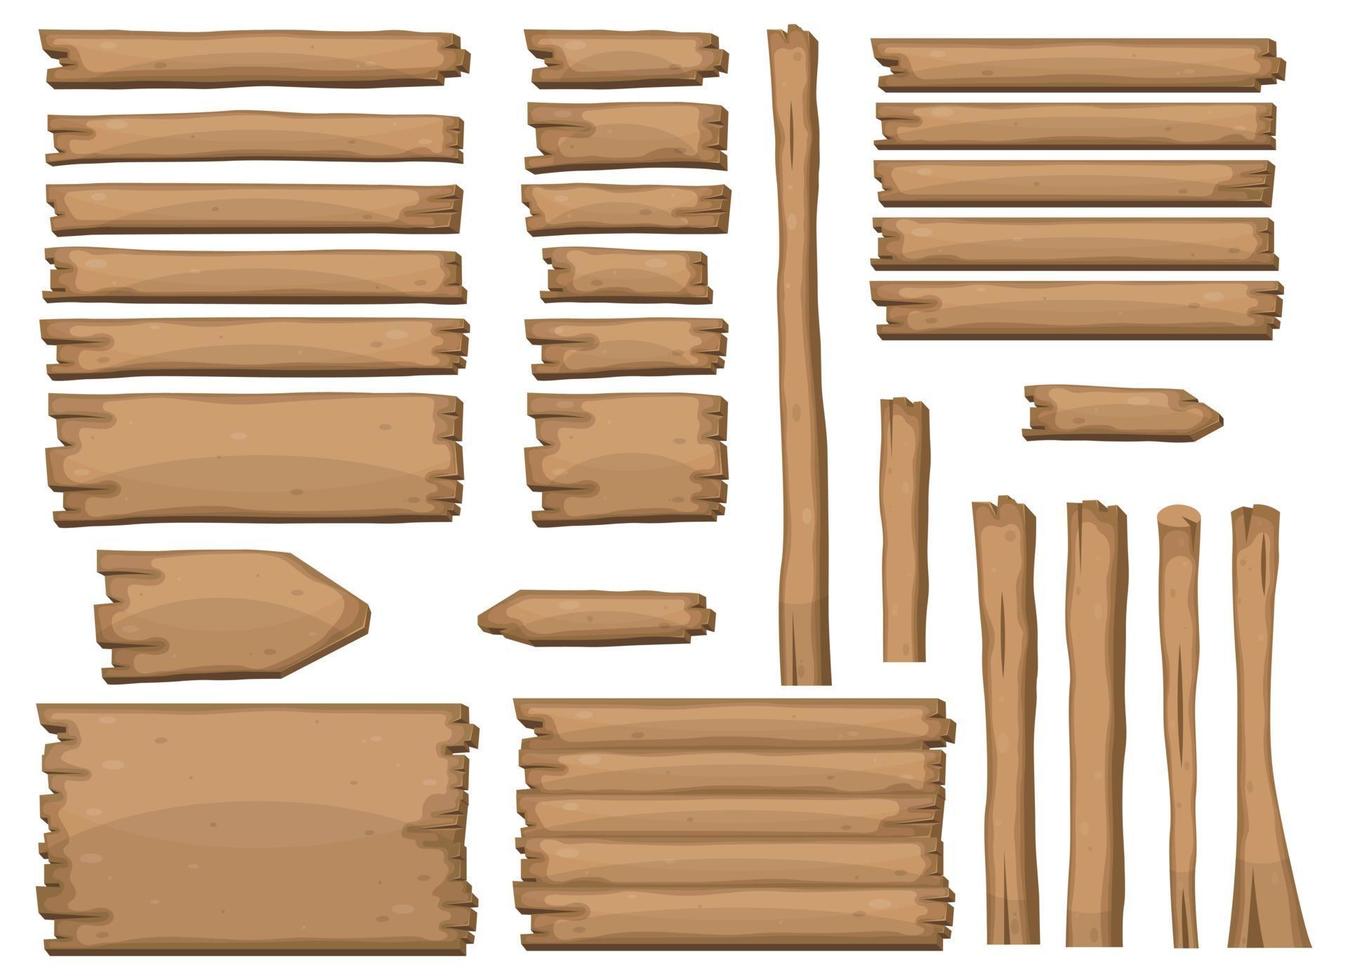 houten planken in cartoonstijl vector